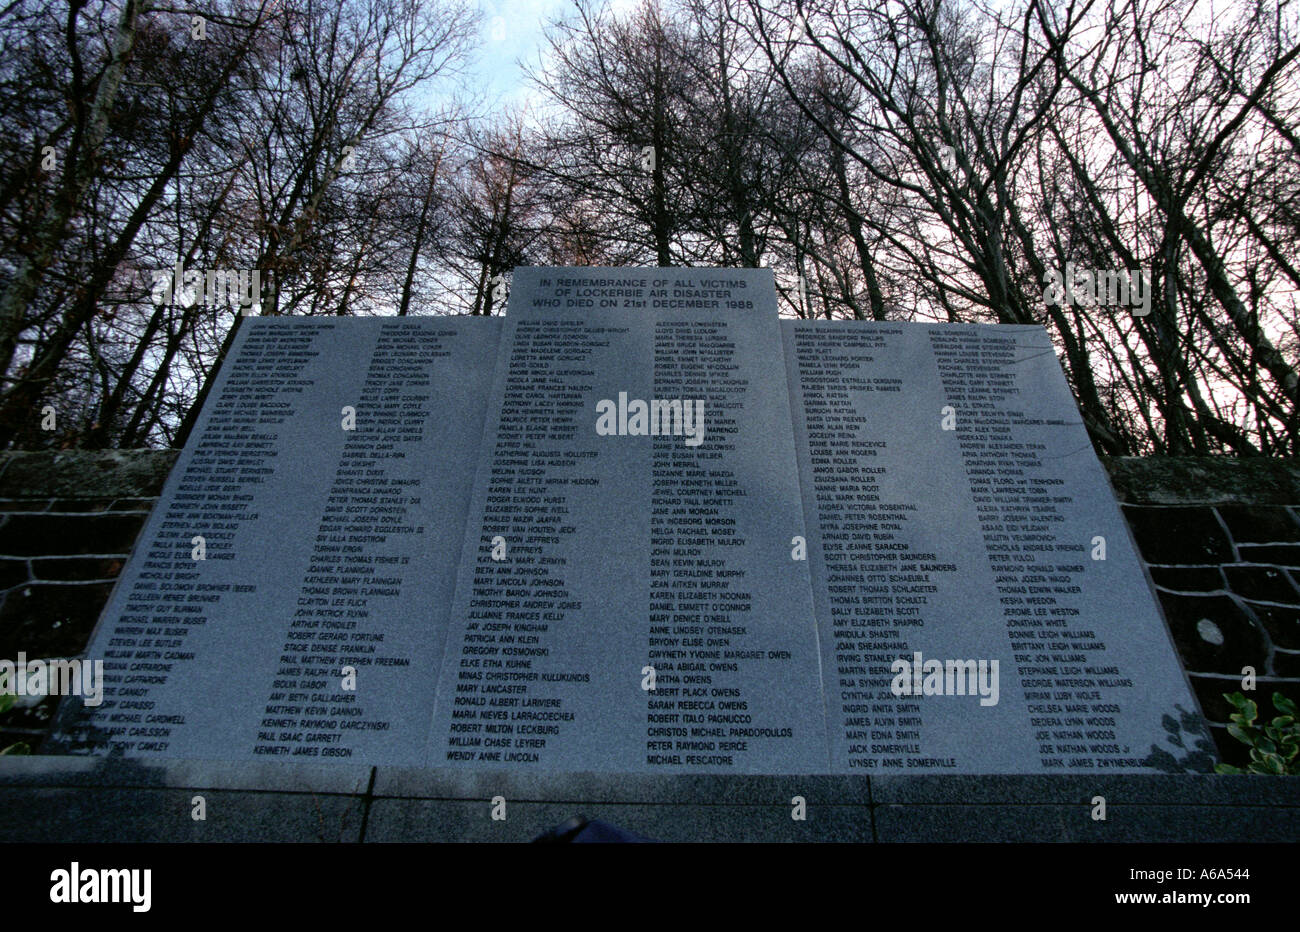 Lockerbie Memorial an PanAm 103 Stockfoto